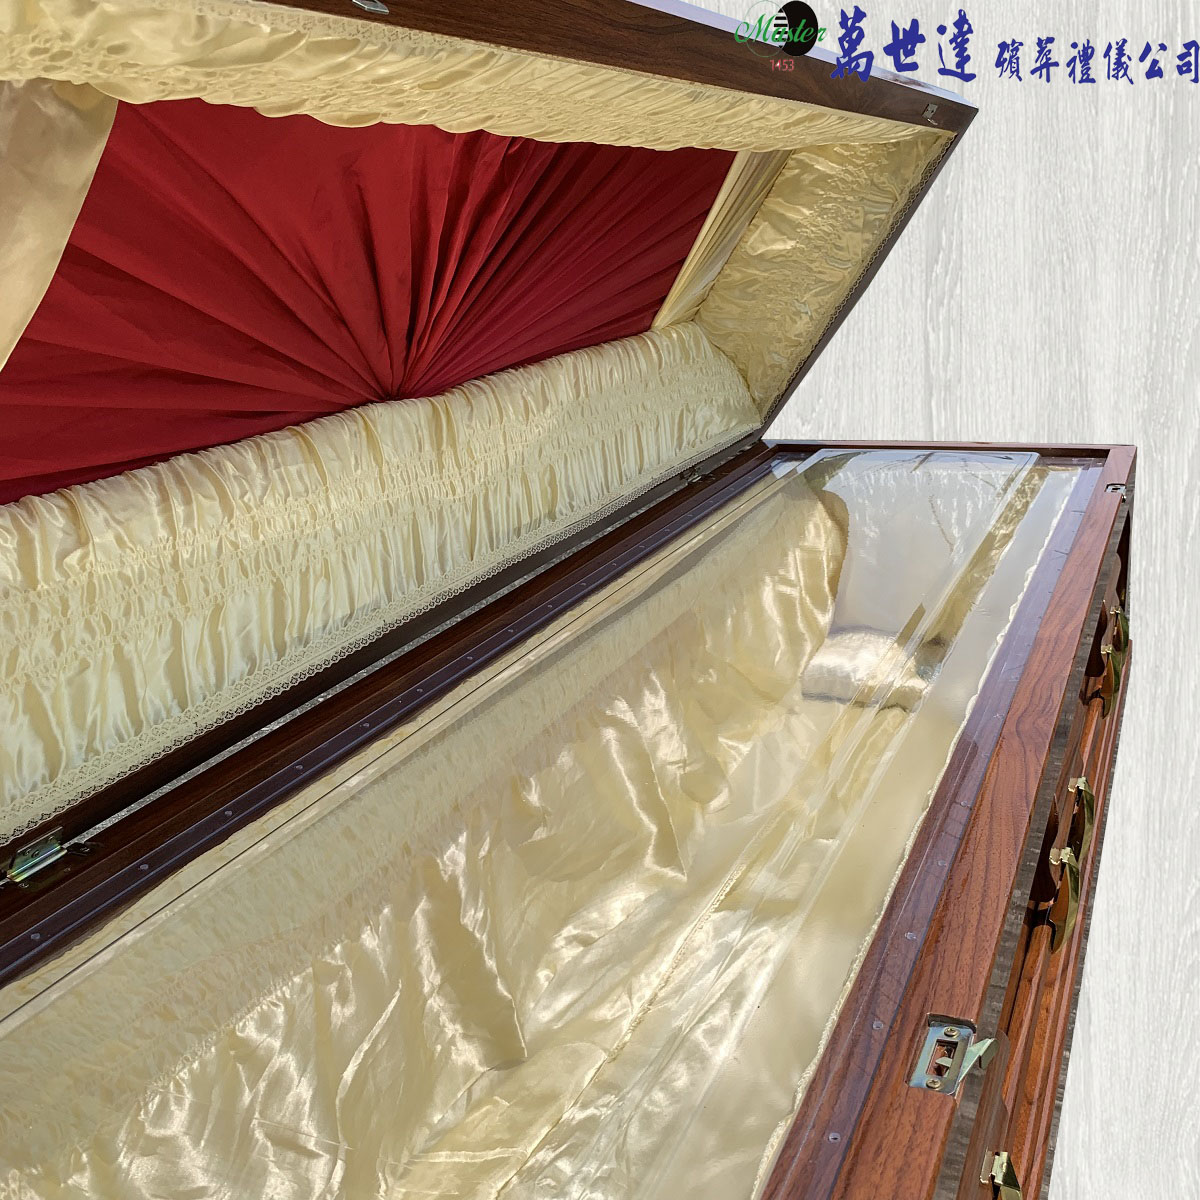 【入殮出】火化平蓋胡桃木扶手棺2.2尺